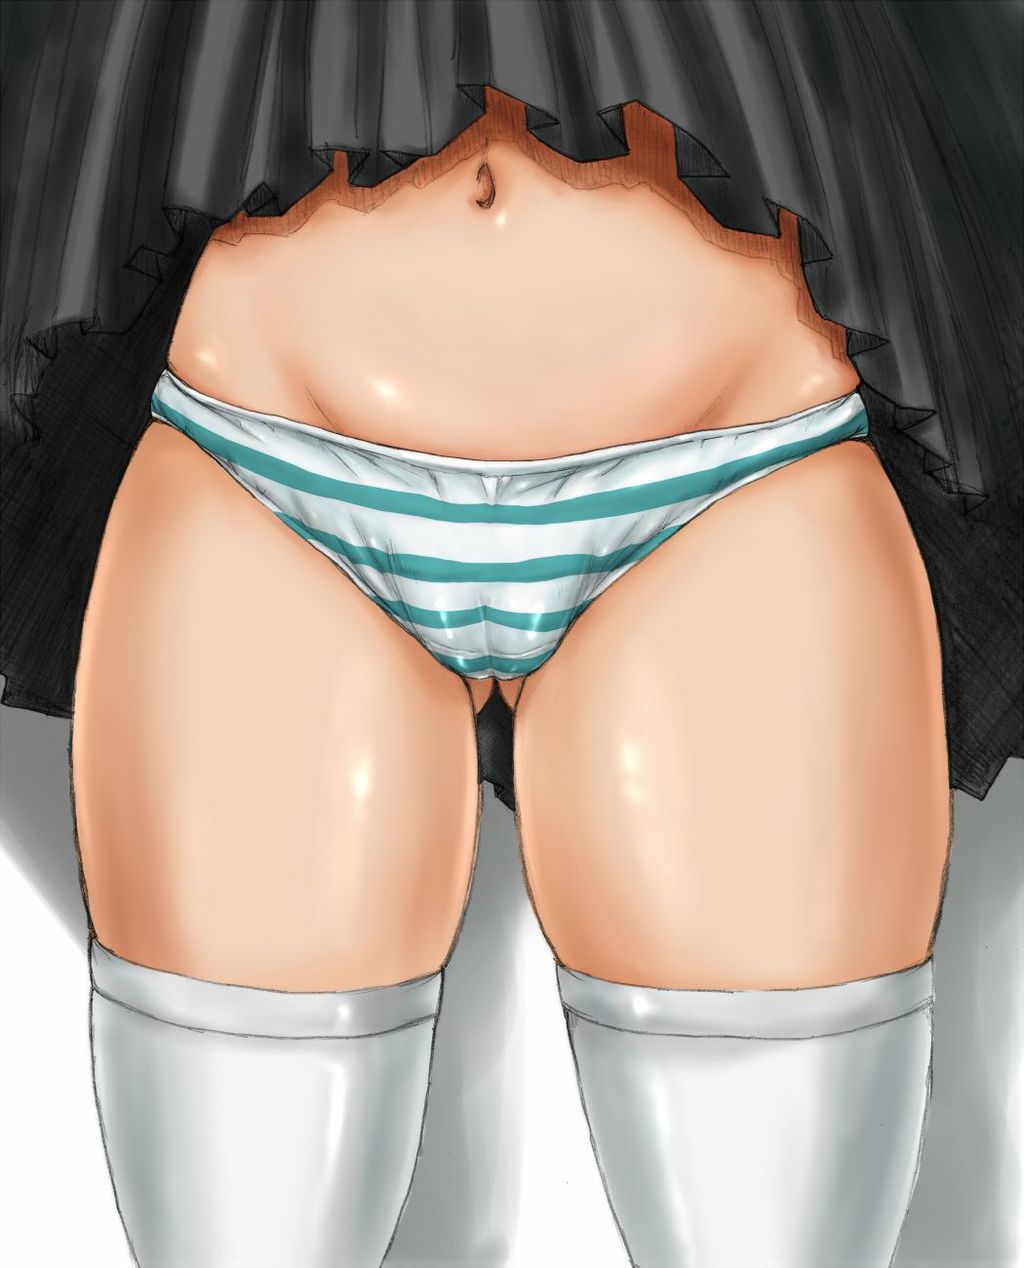 [2次] 2: erotic images of pretty girls wore striped pants part 4 [shimapan] 8